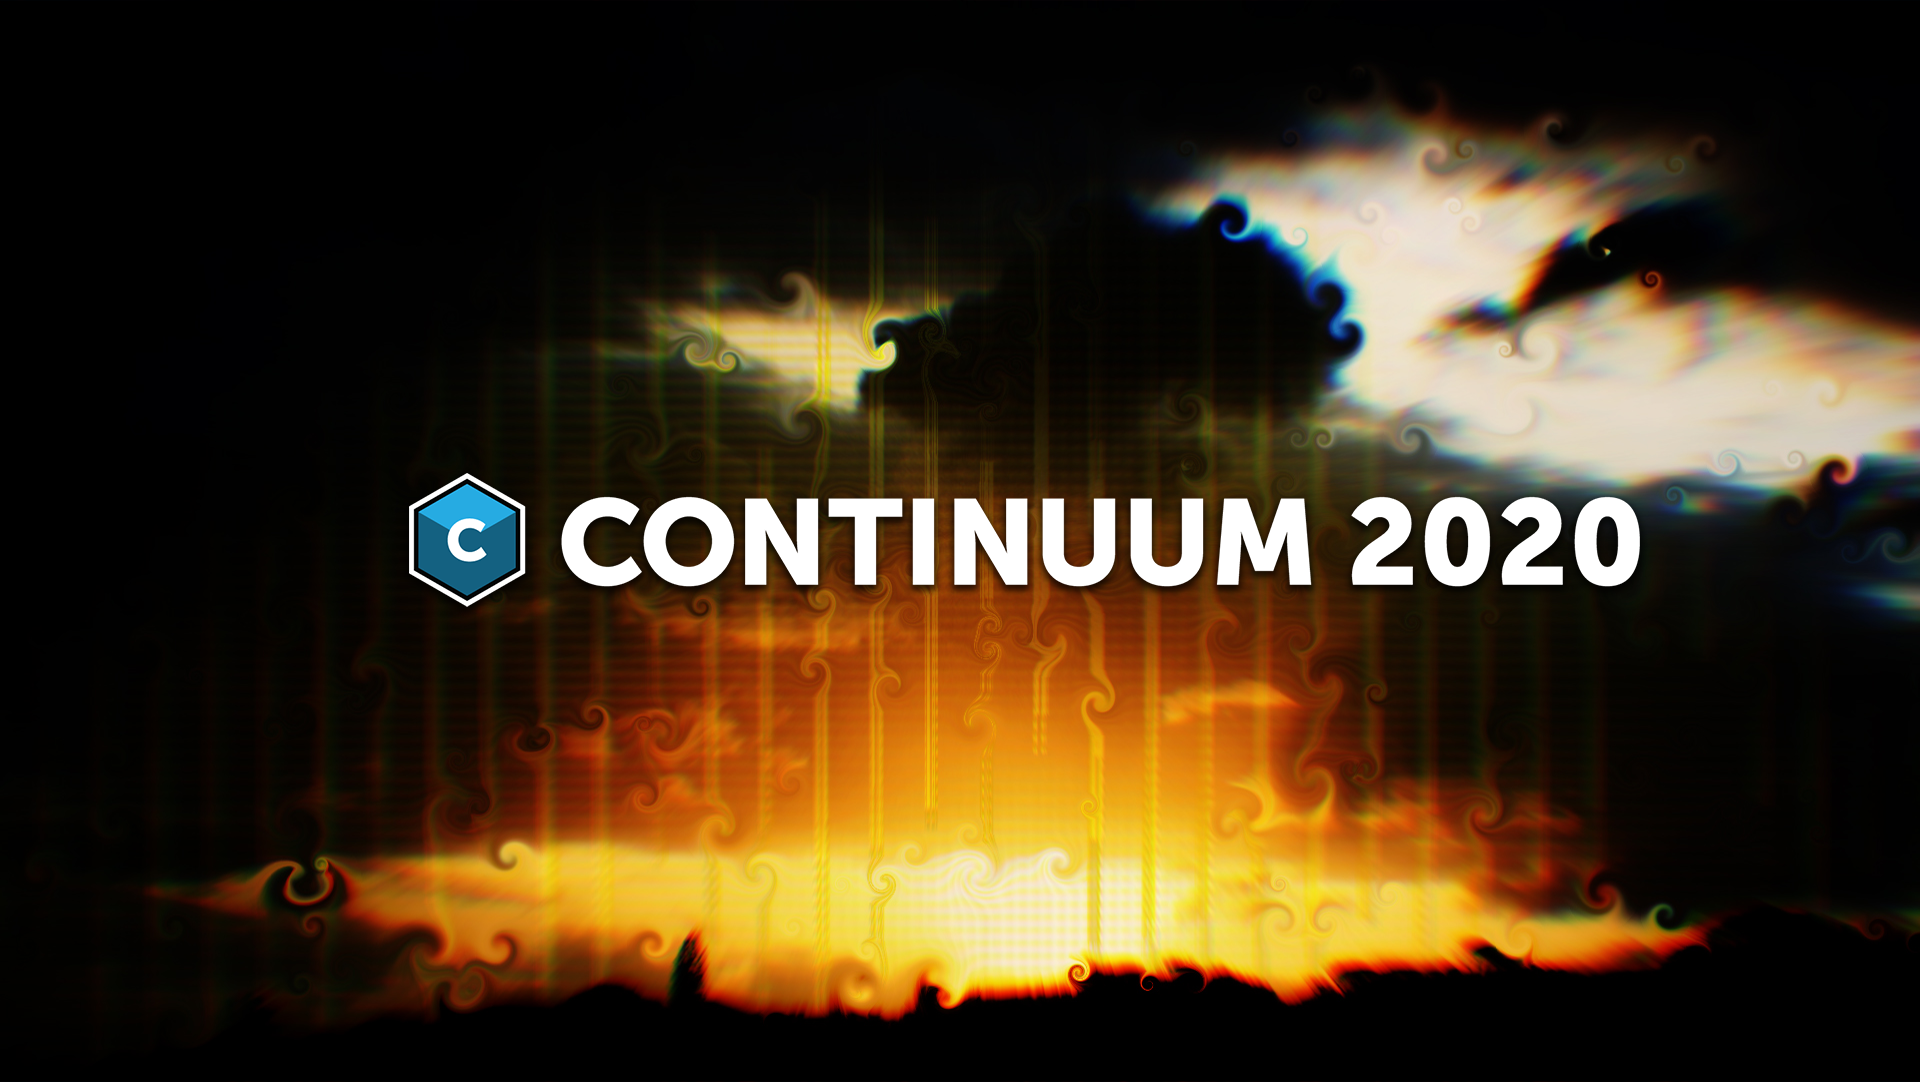 Continuum 2020 banner image